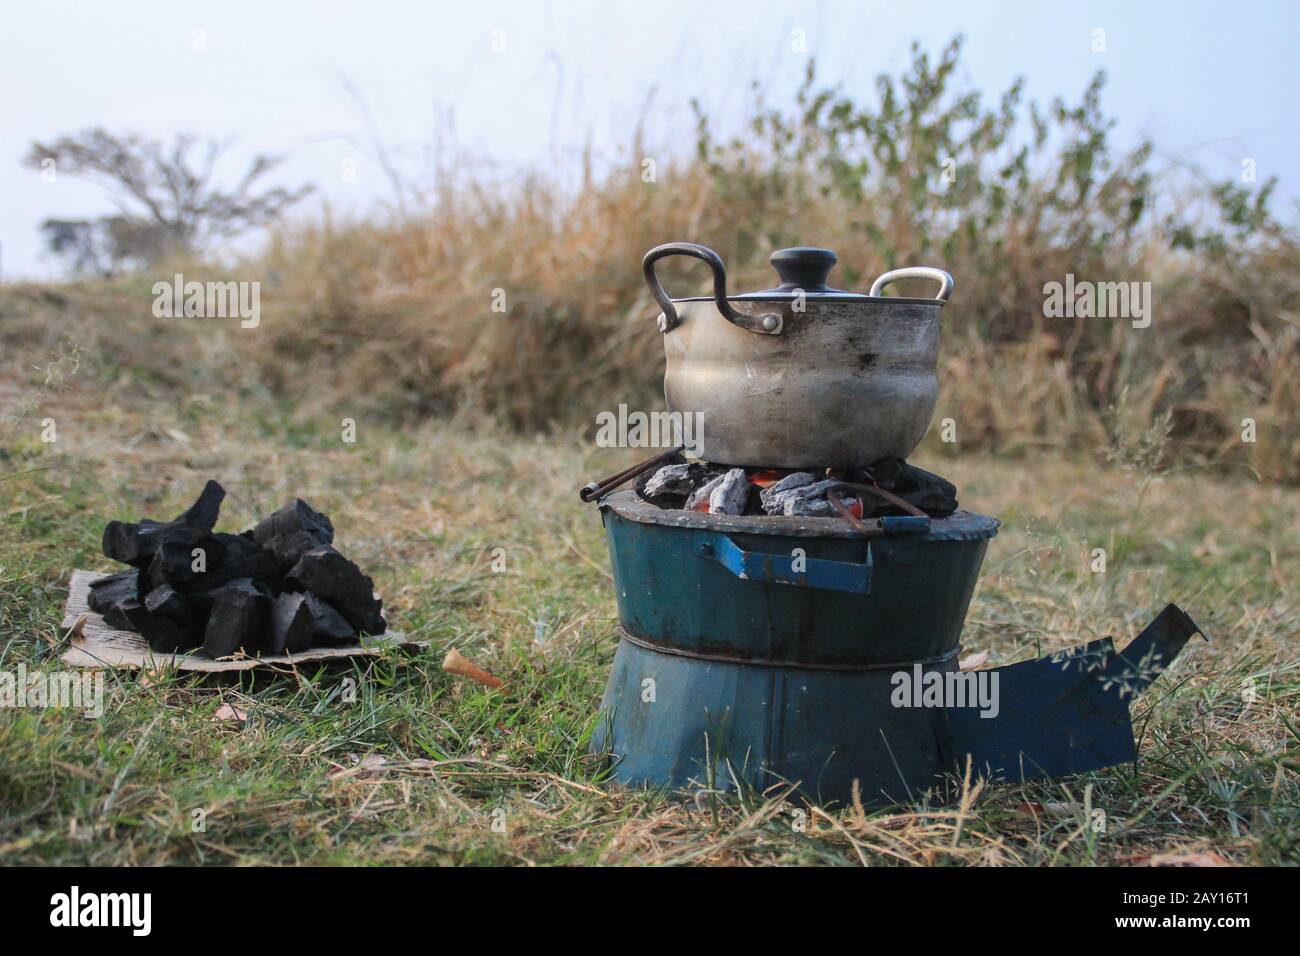 Cuisine traditionnelle charbon de bois et potventral poêle en Afrique sur la nature dans une poêle. Banque D'Images